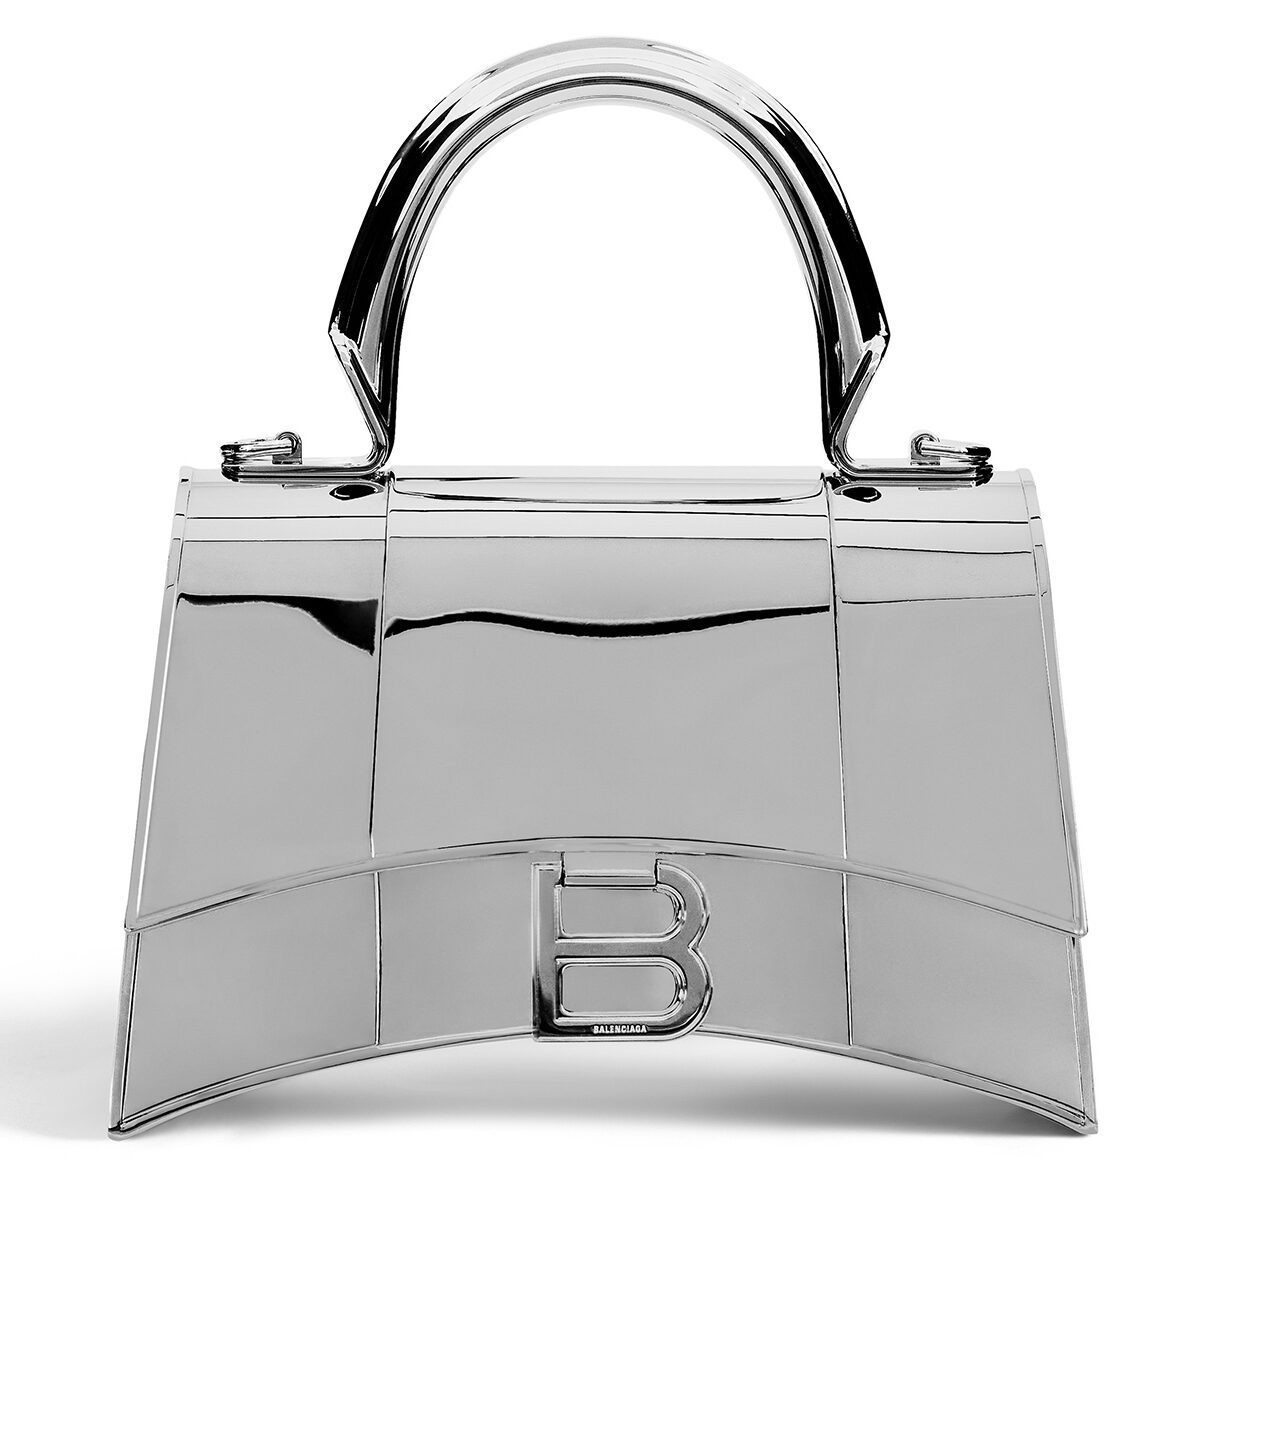 Balenciaga Fall-winter collection silver bag